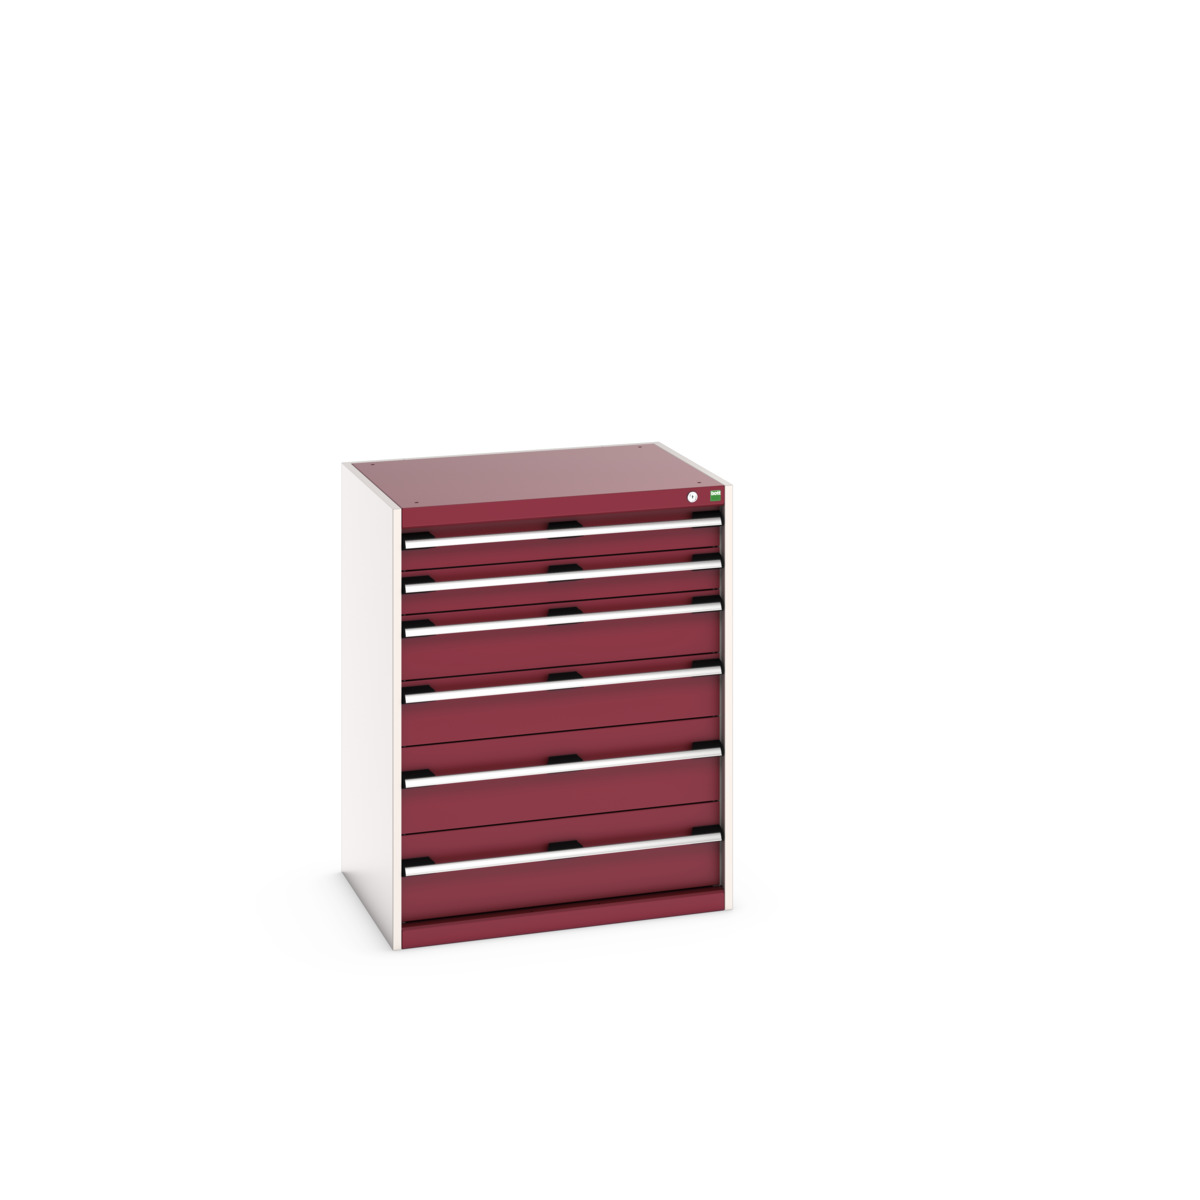 40020050.24V - cubio drawer cabinet